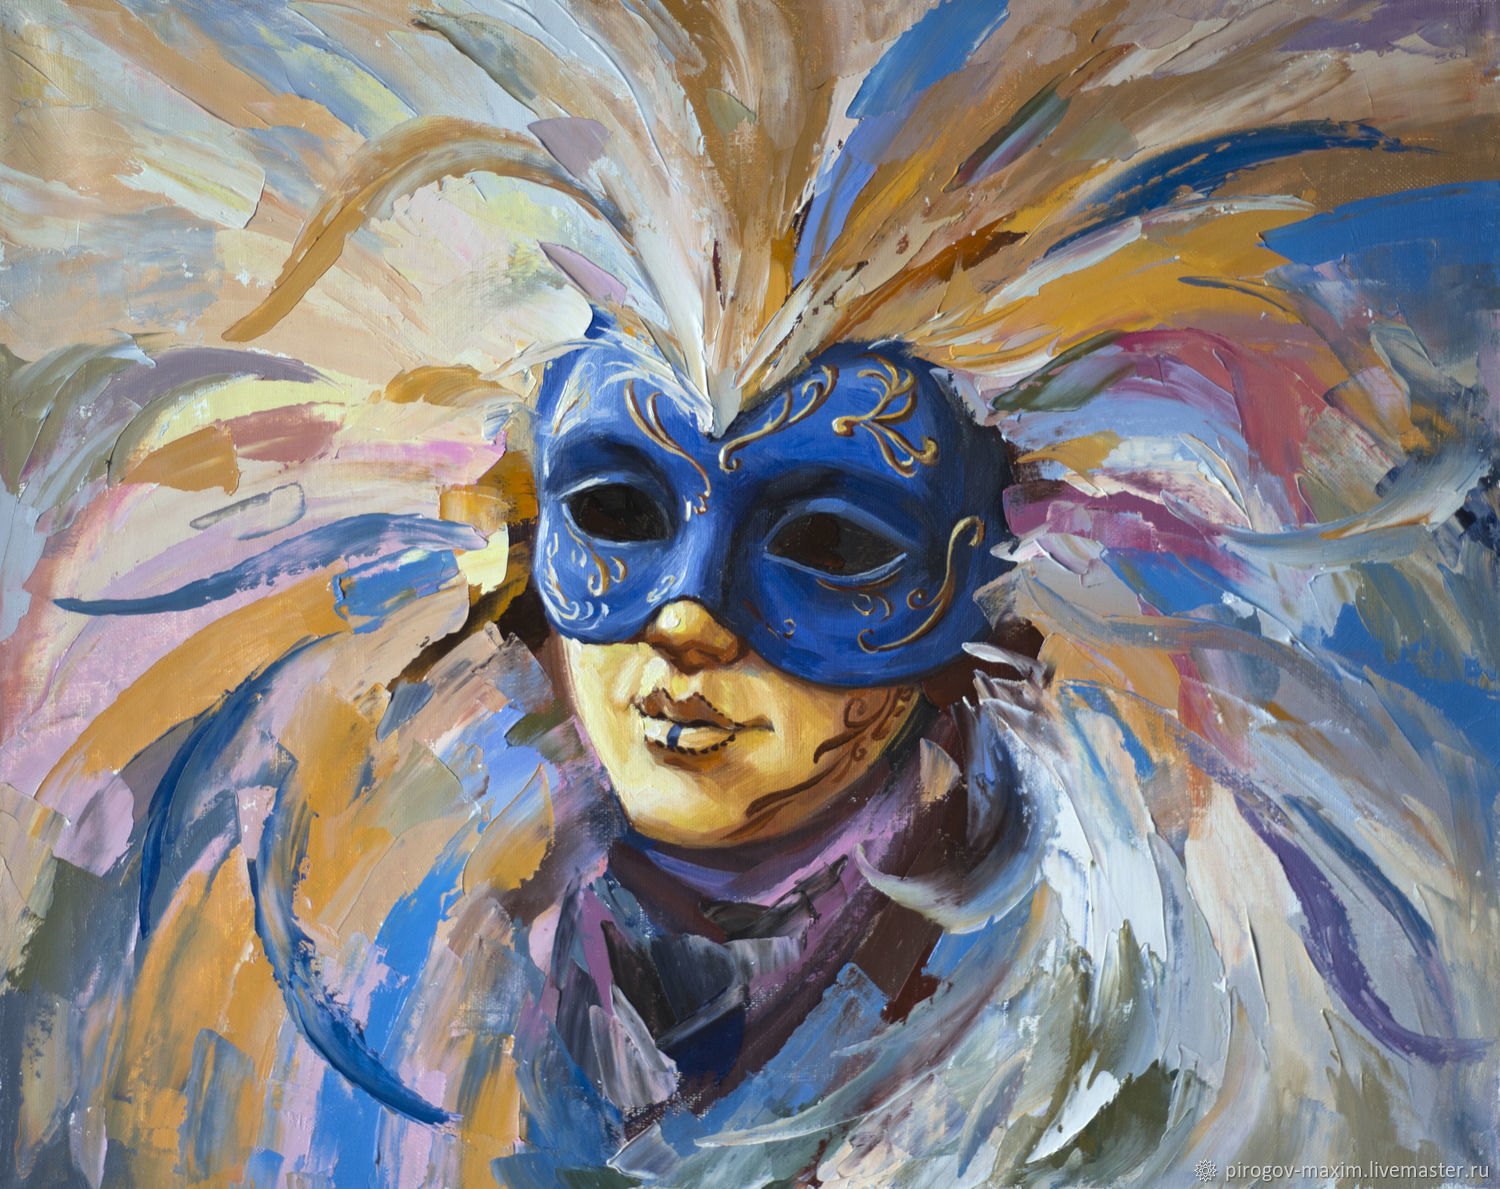 Рисунок в цвете театральной маски жанр любой - фото и картинки  abrakadabra.fun